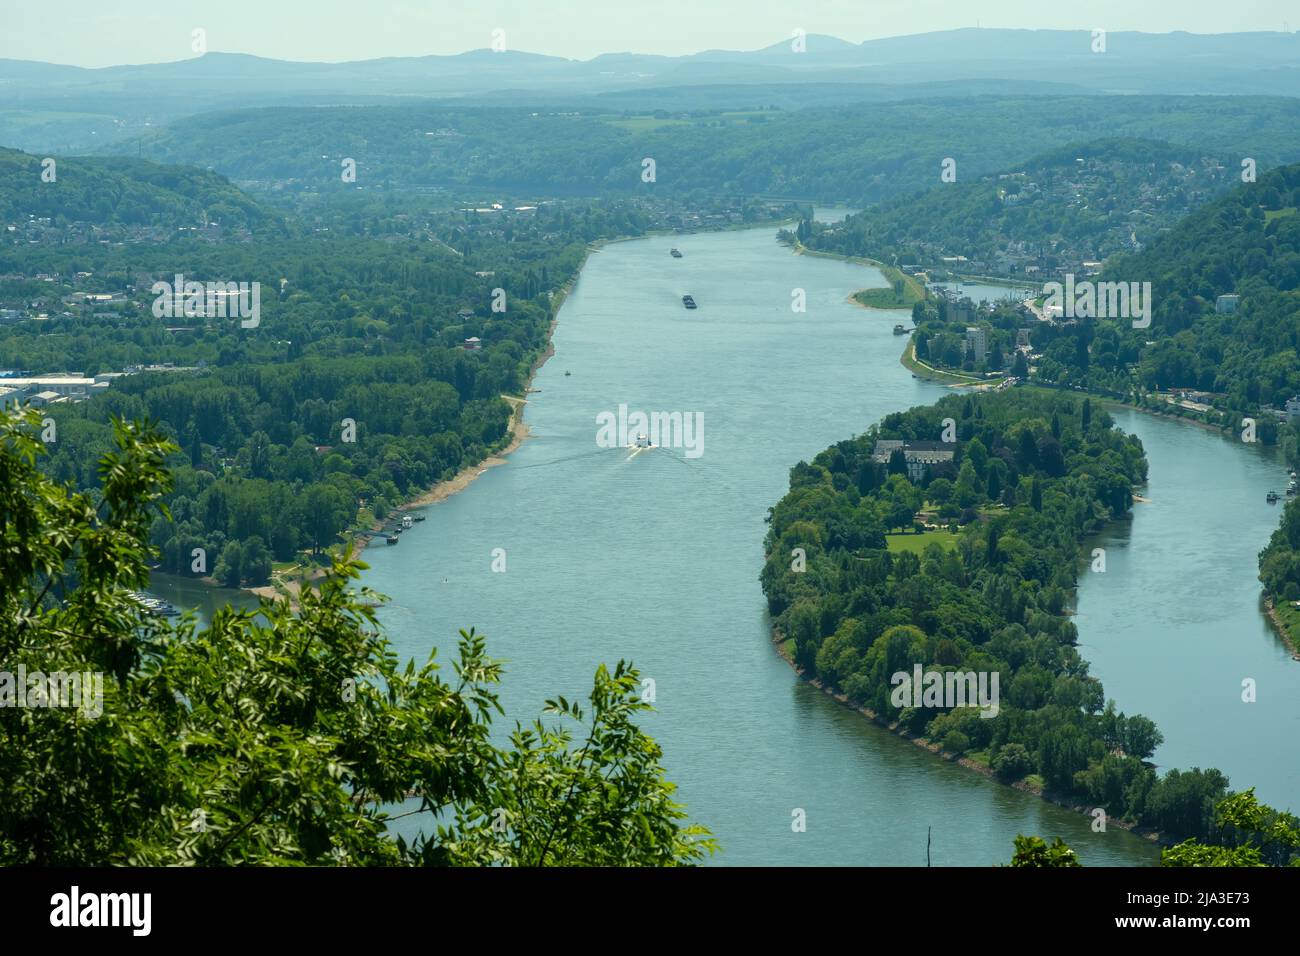 Vue panoramique sur le Rhin depuis les célèbres Drachenfels de Königswinter Allemagne Banque D'Images